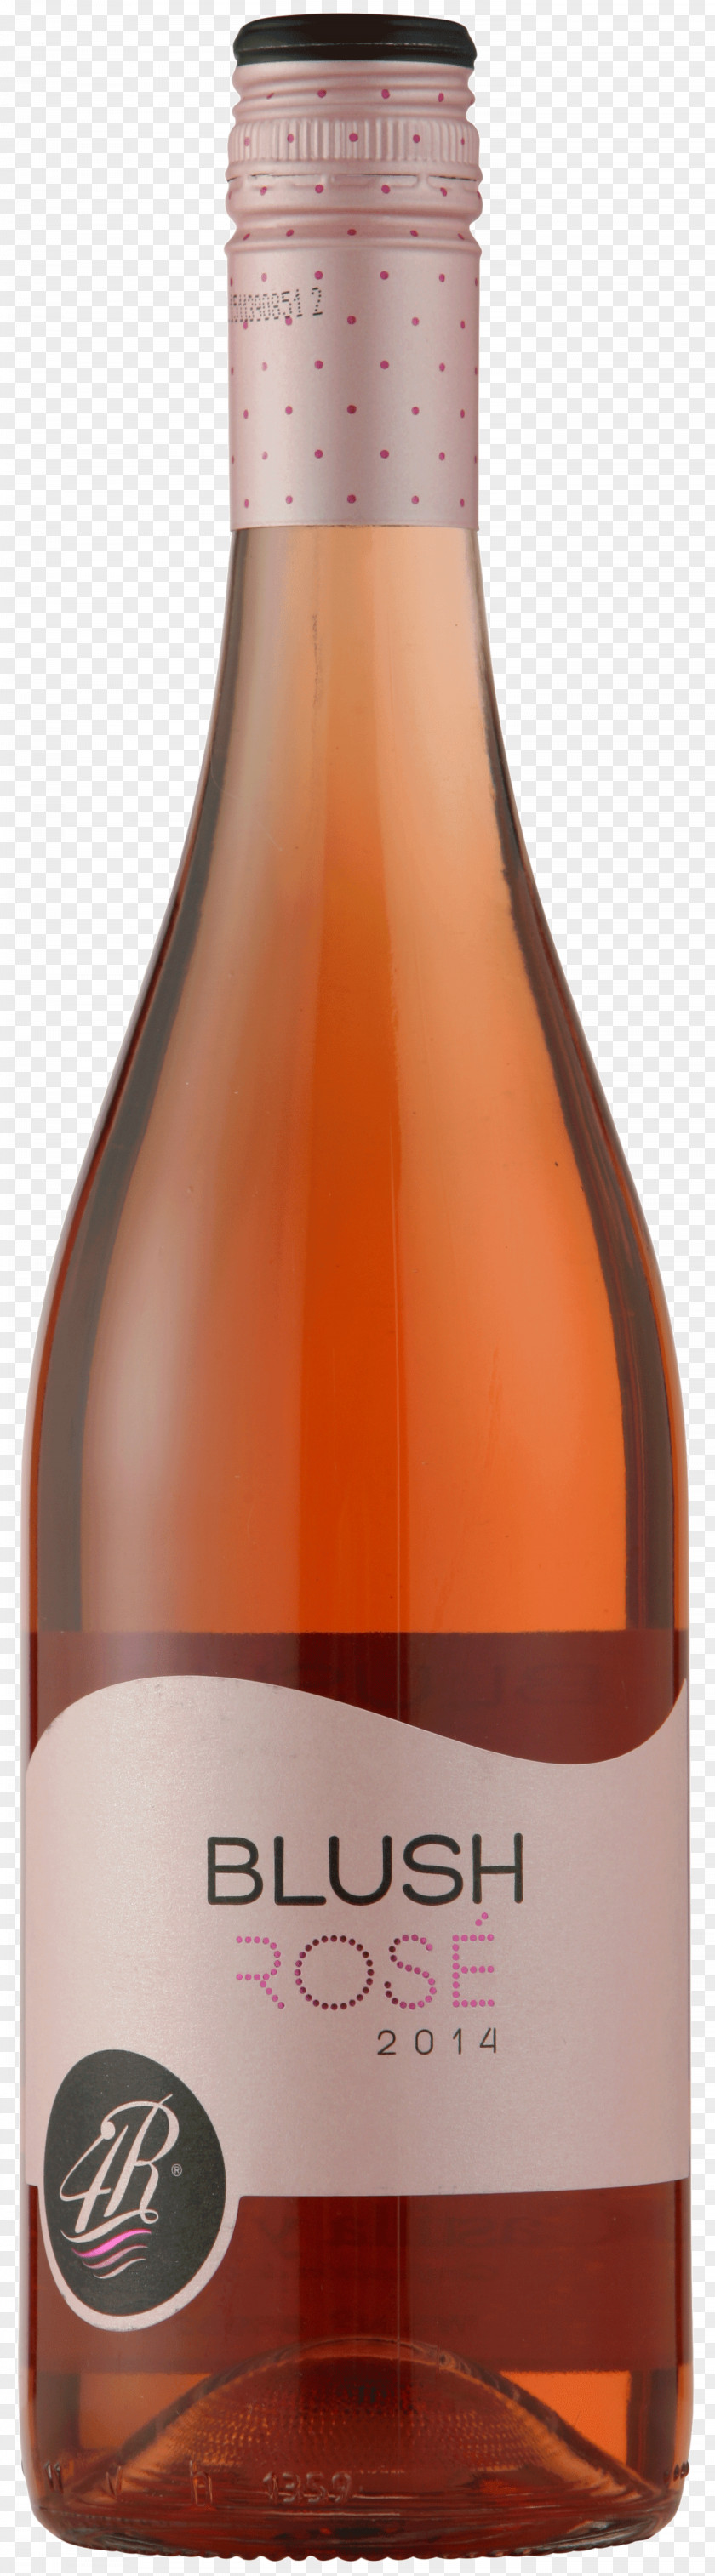 Blush Wine Distilled Beverage Beer Liqueur Bottle PNG